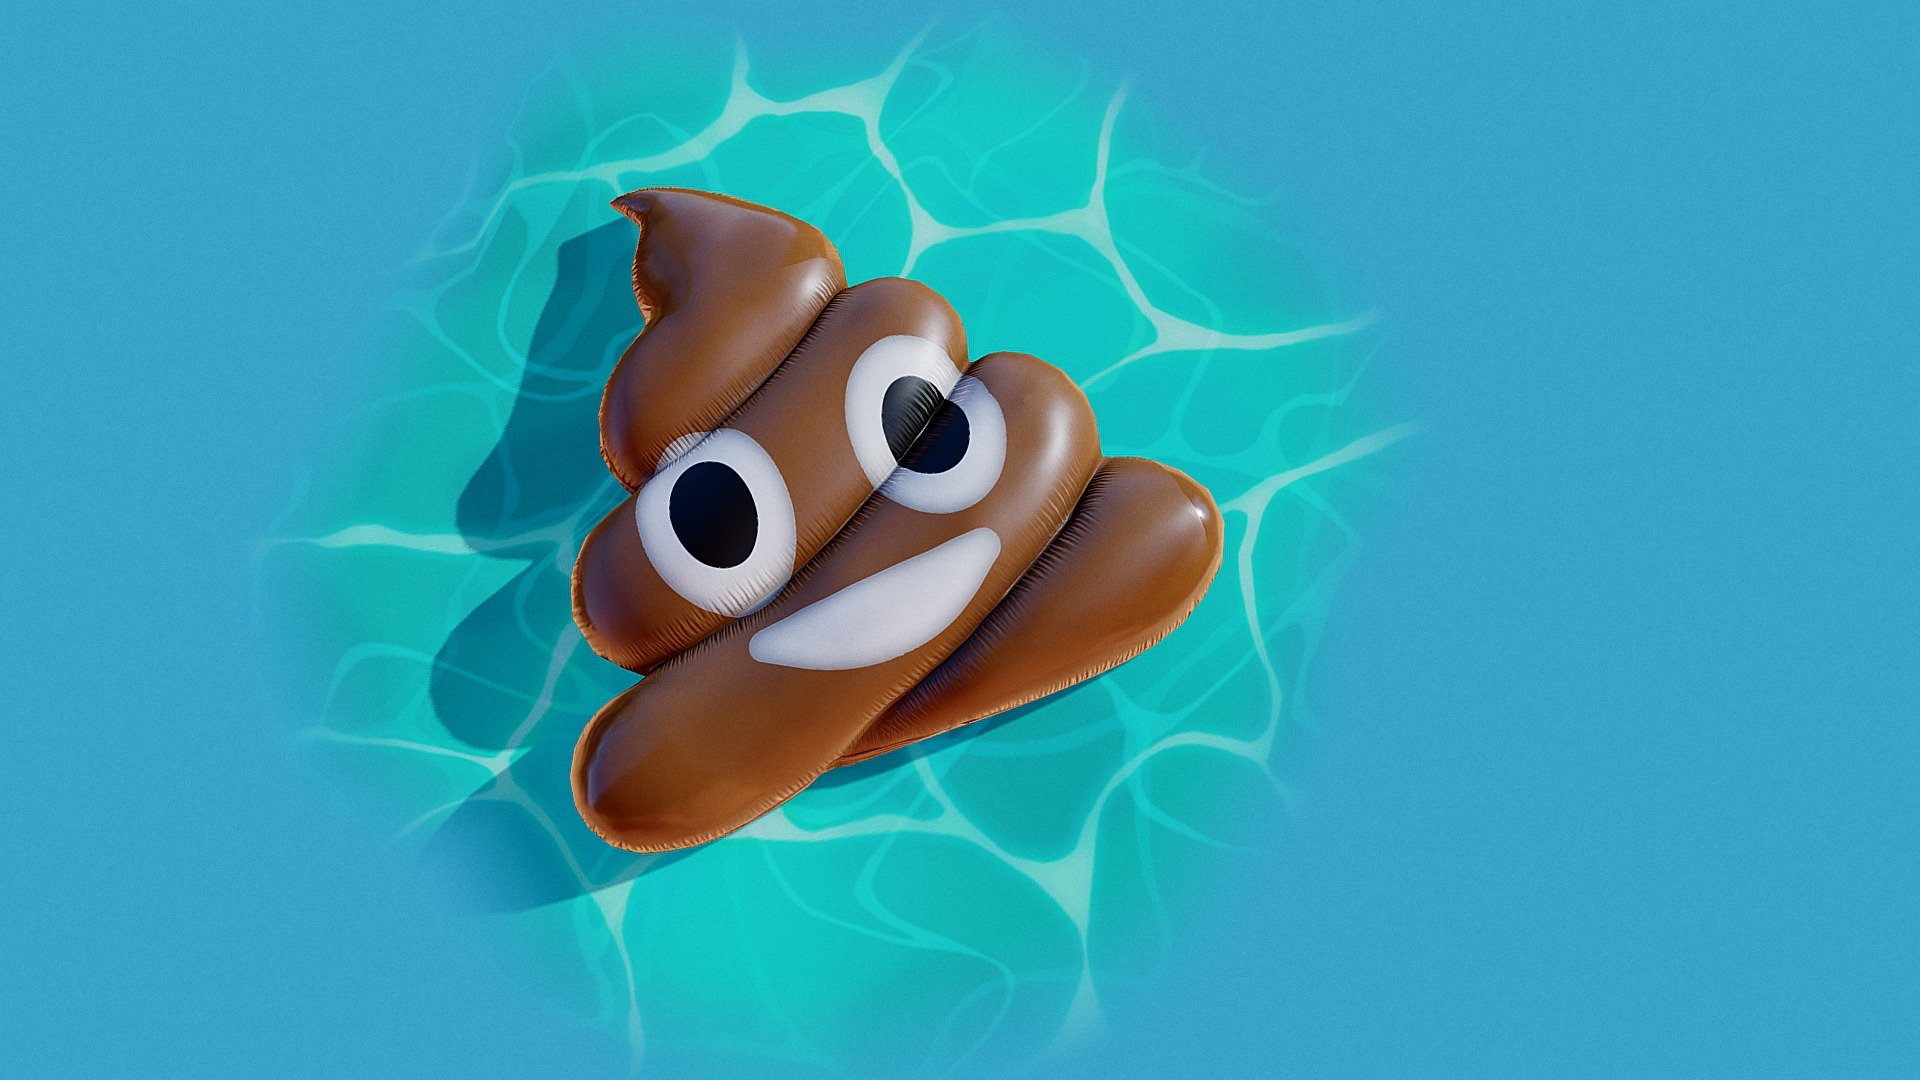 Inflatable Pile Of Poo emoji Float pool - Inflatable Pile Of Poo emoji - Buy Royalty Free 3D model by msanjurj 3d model